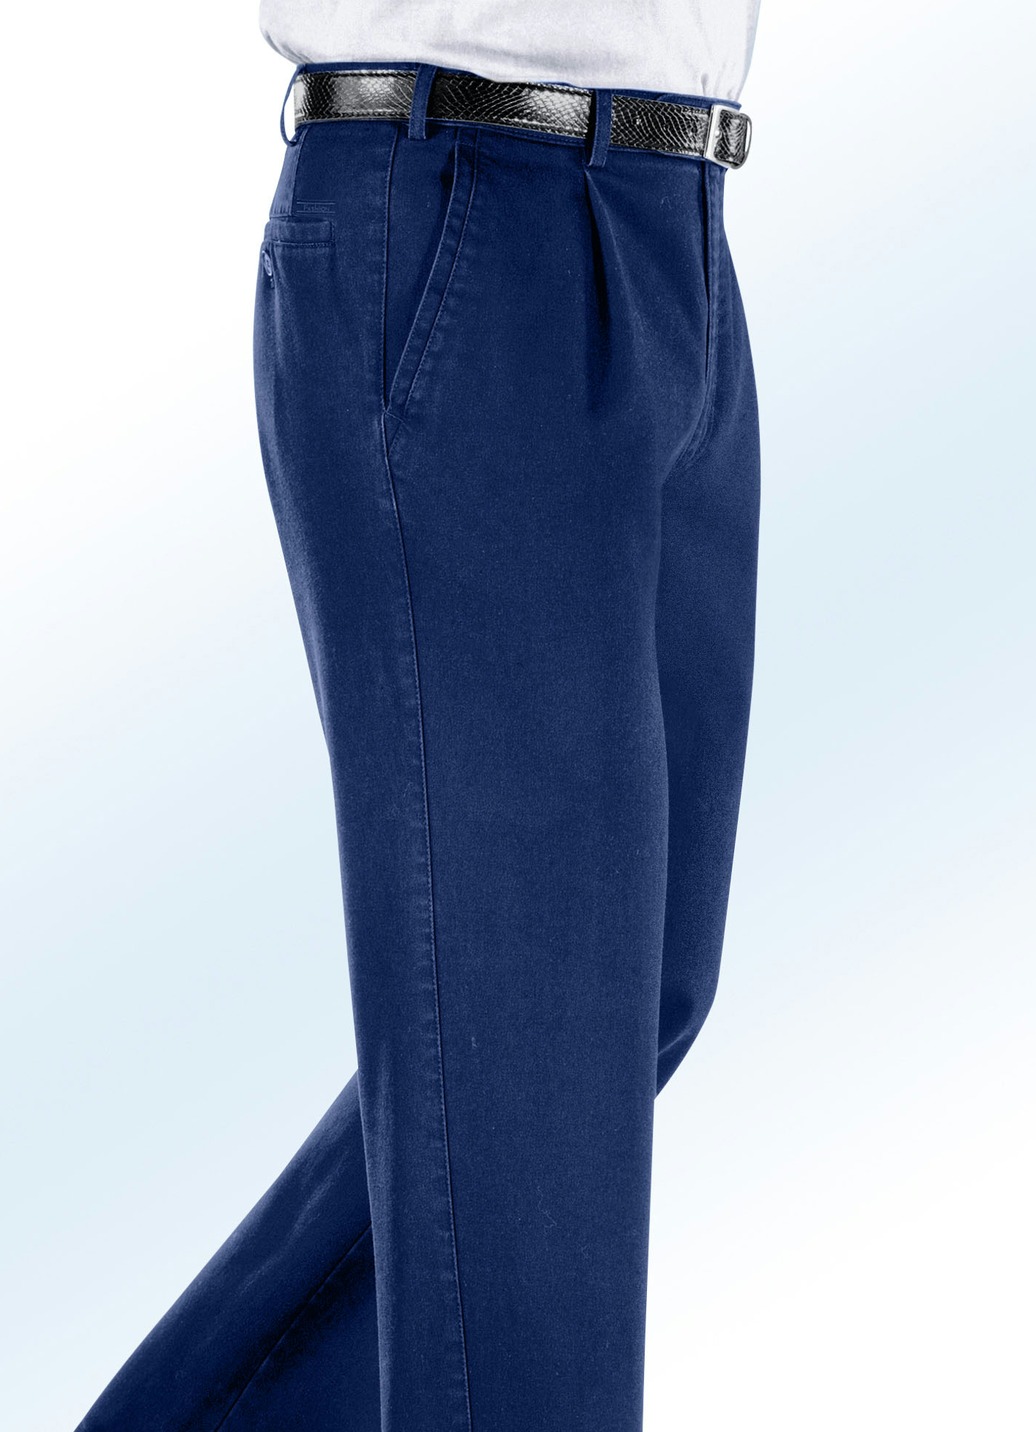 Bügelfreie Jeans mit Zieretikett in 3 Farben, Jeansblau, Größe 31 von BADER